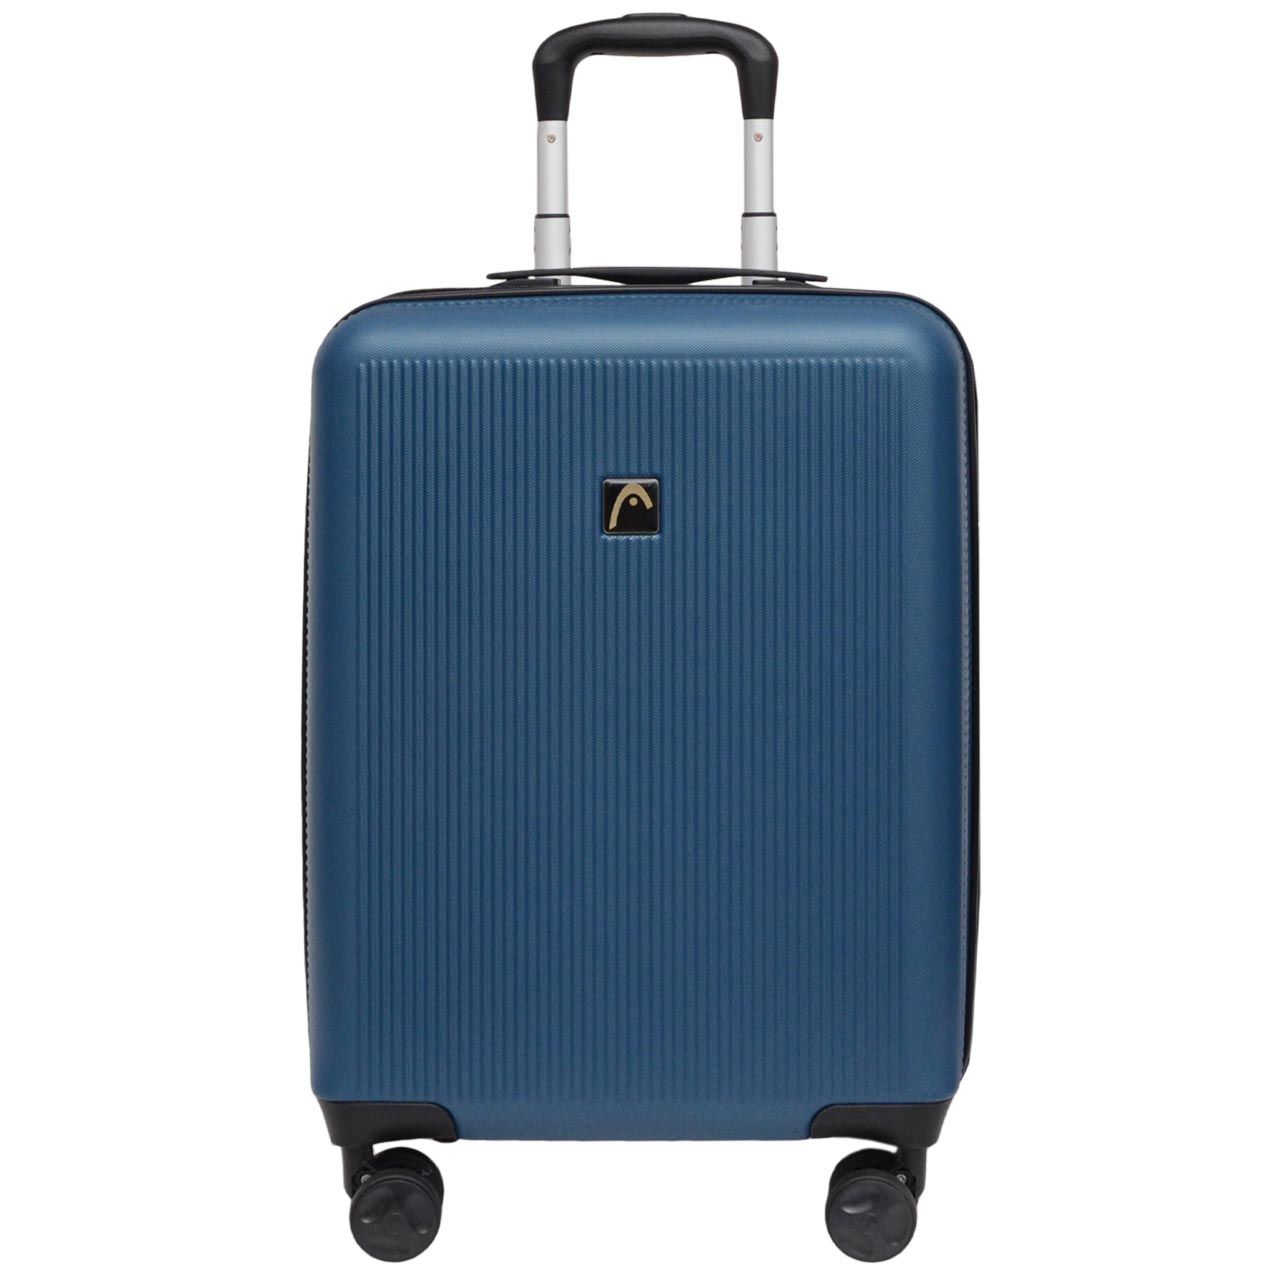 چمدان هد مدل HL 006 سایز کوچک -  - 1